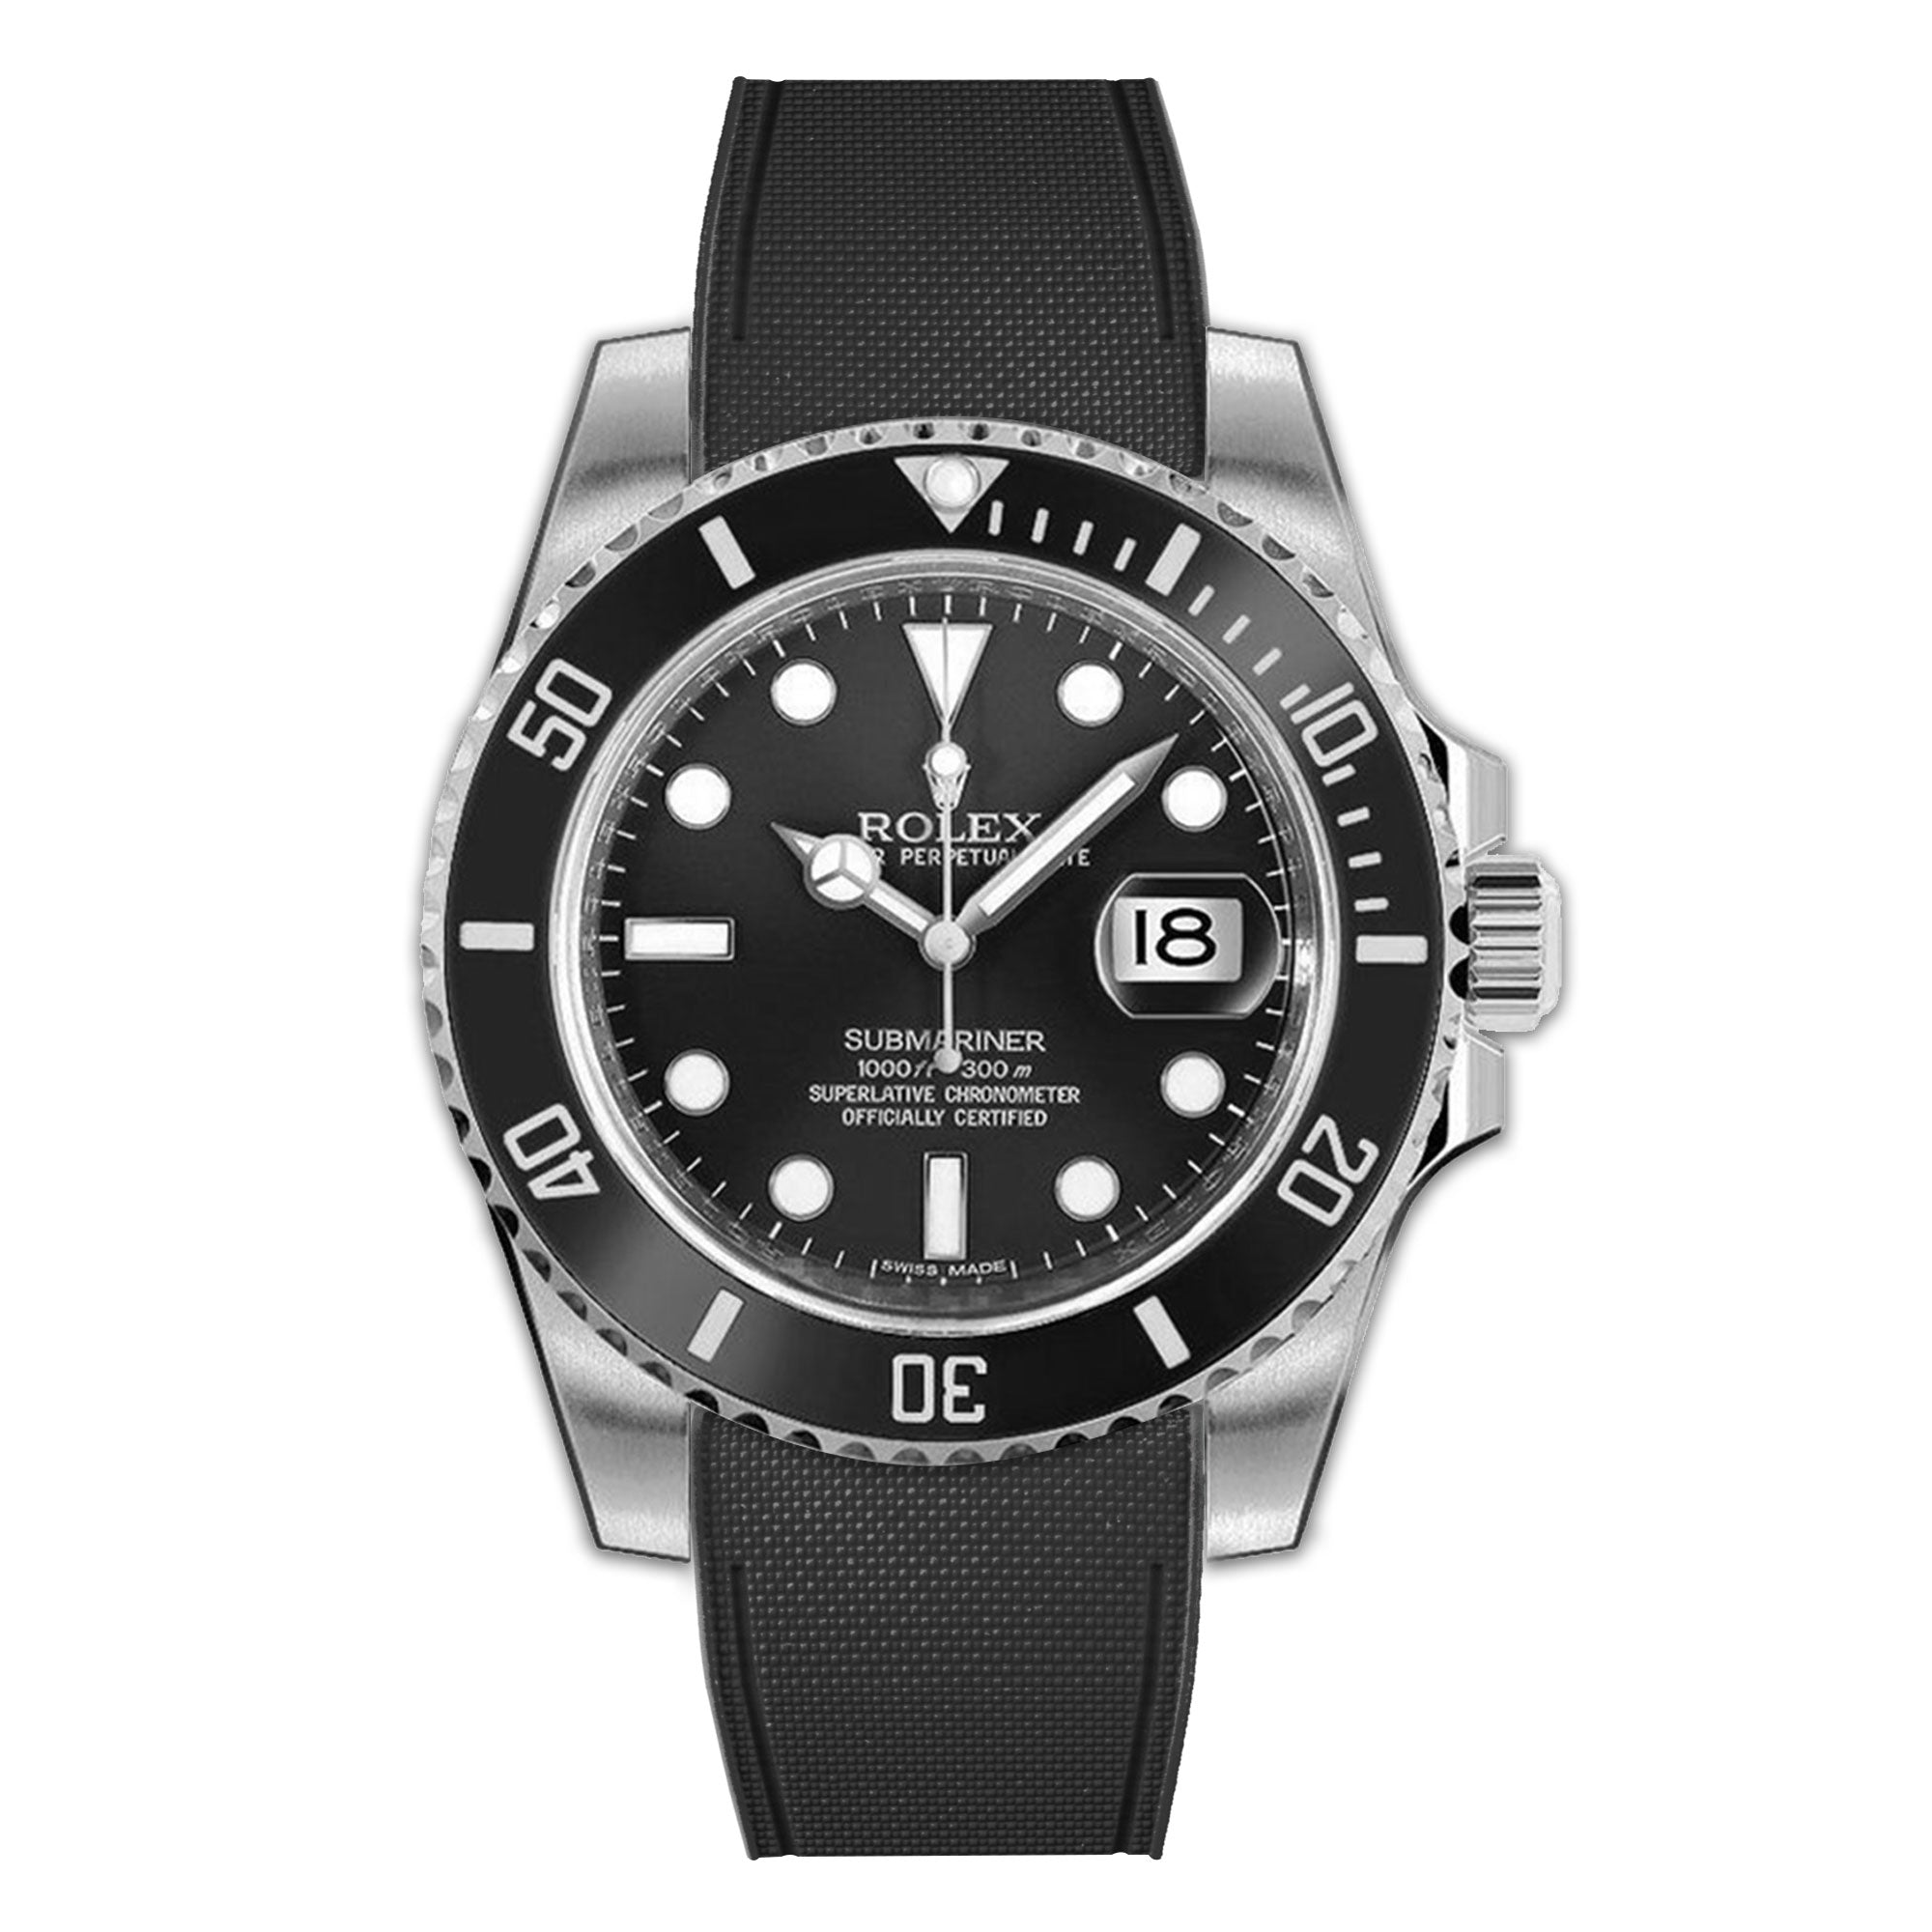 R watch for Rolex Submariner 40mm non-ceramic – ABP Concept